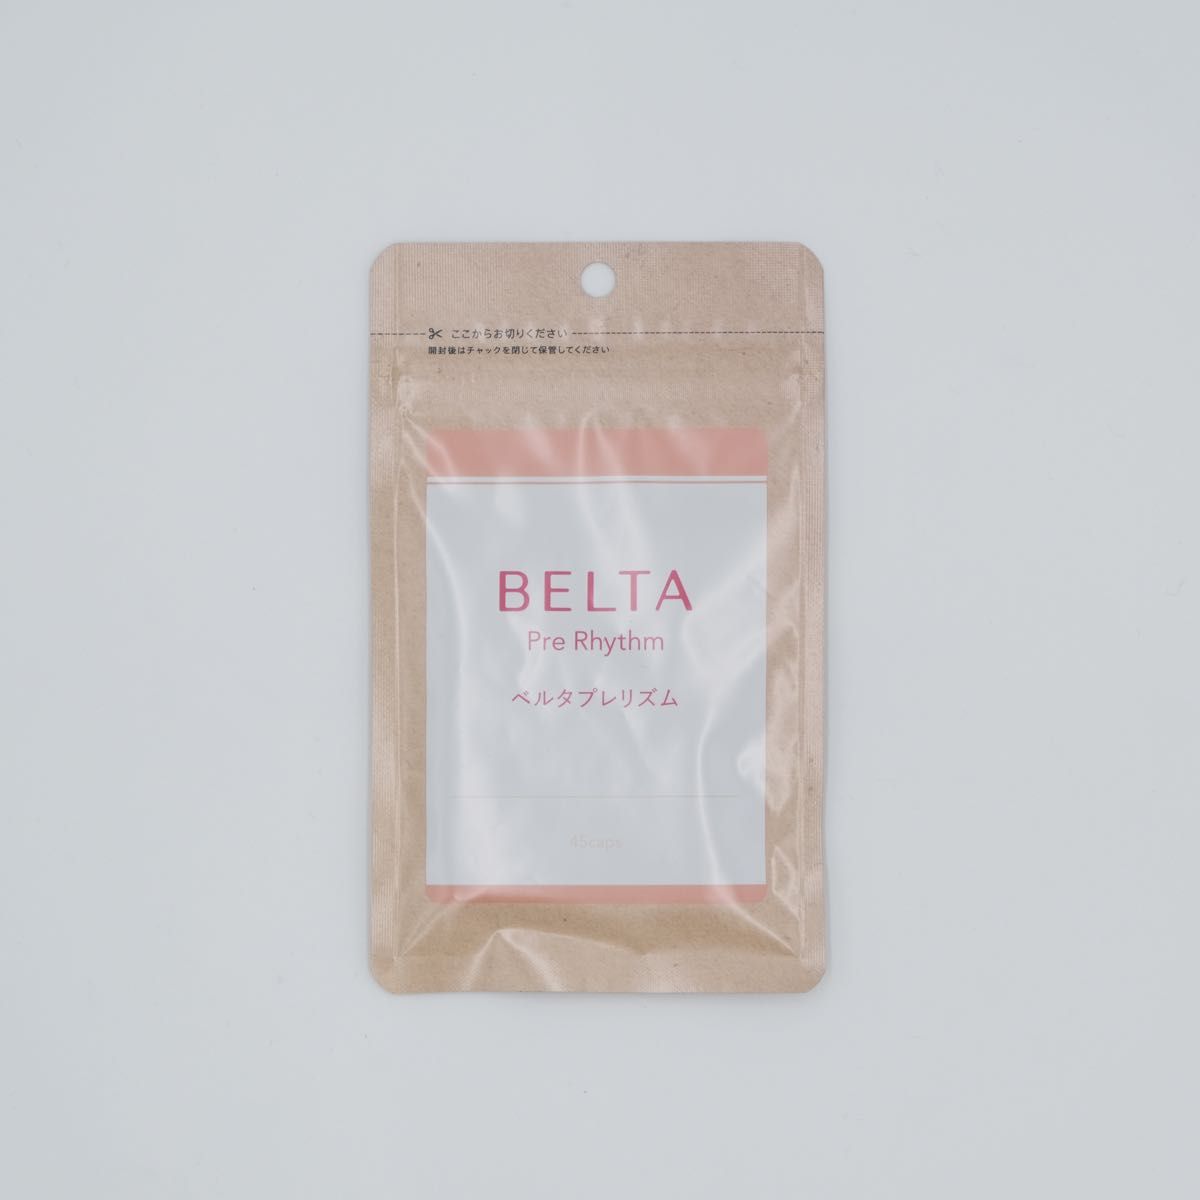 【新品】BELTA ベルタプレリズム 45粒 妊活 葉酸